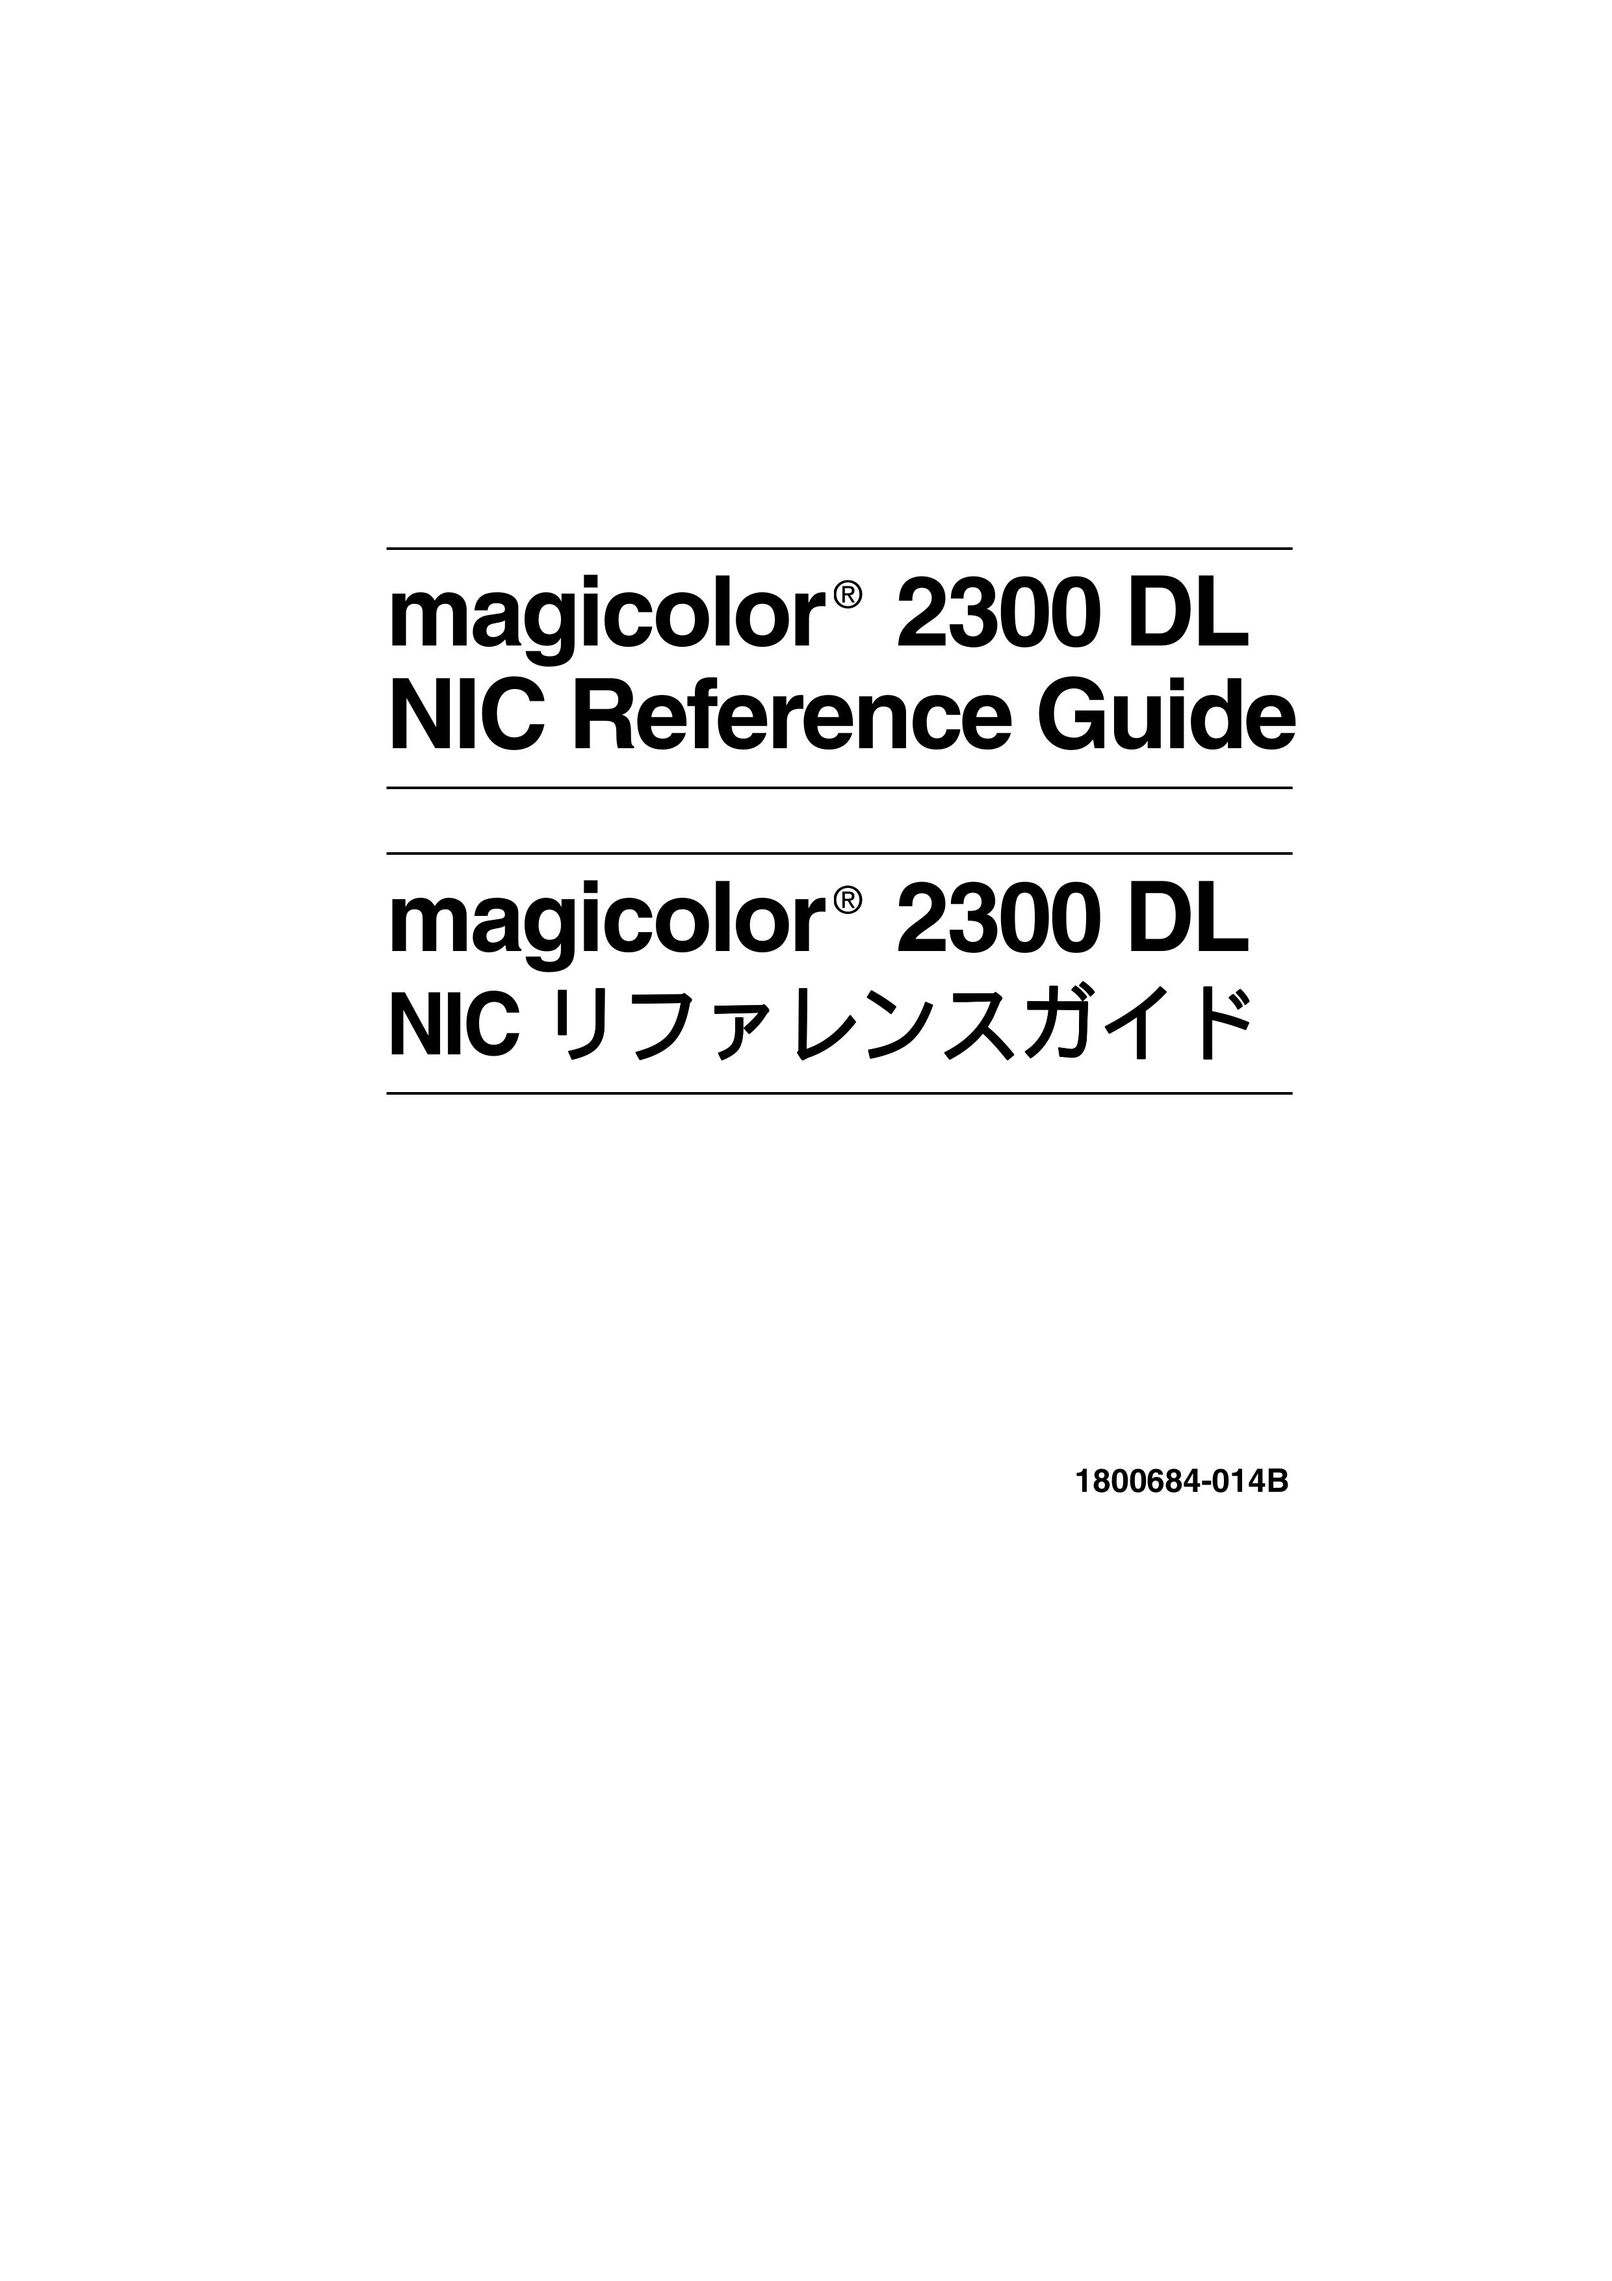 Minolta 2300 DL Printer User Manual